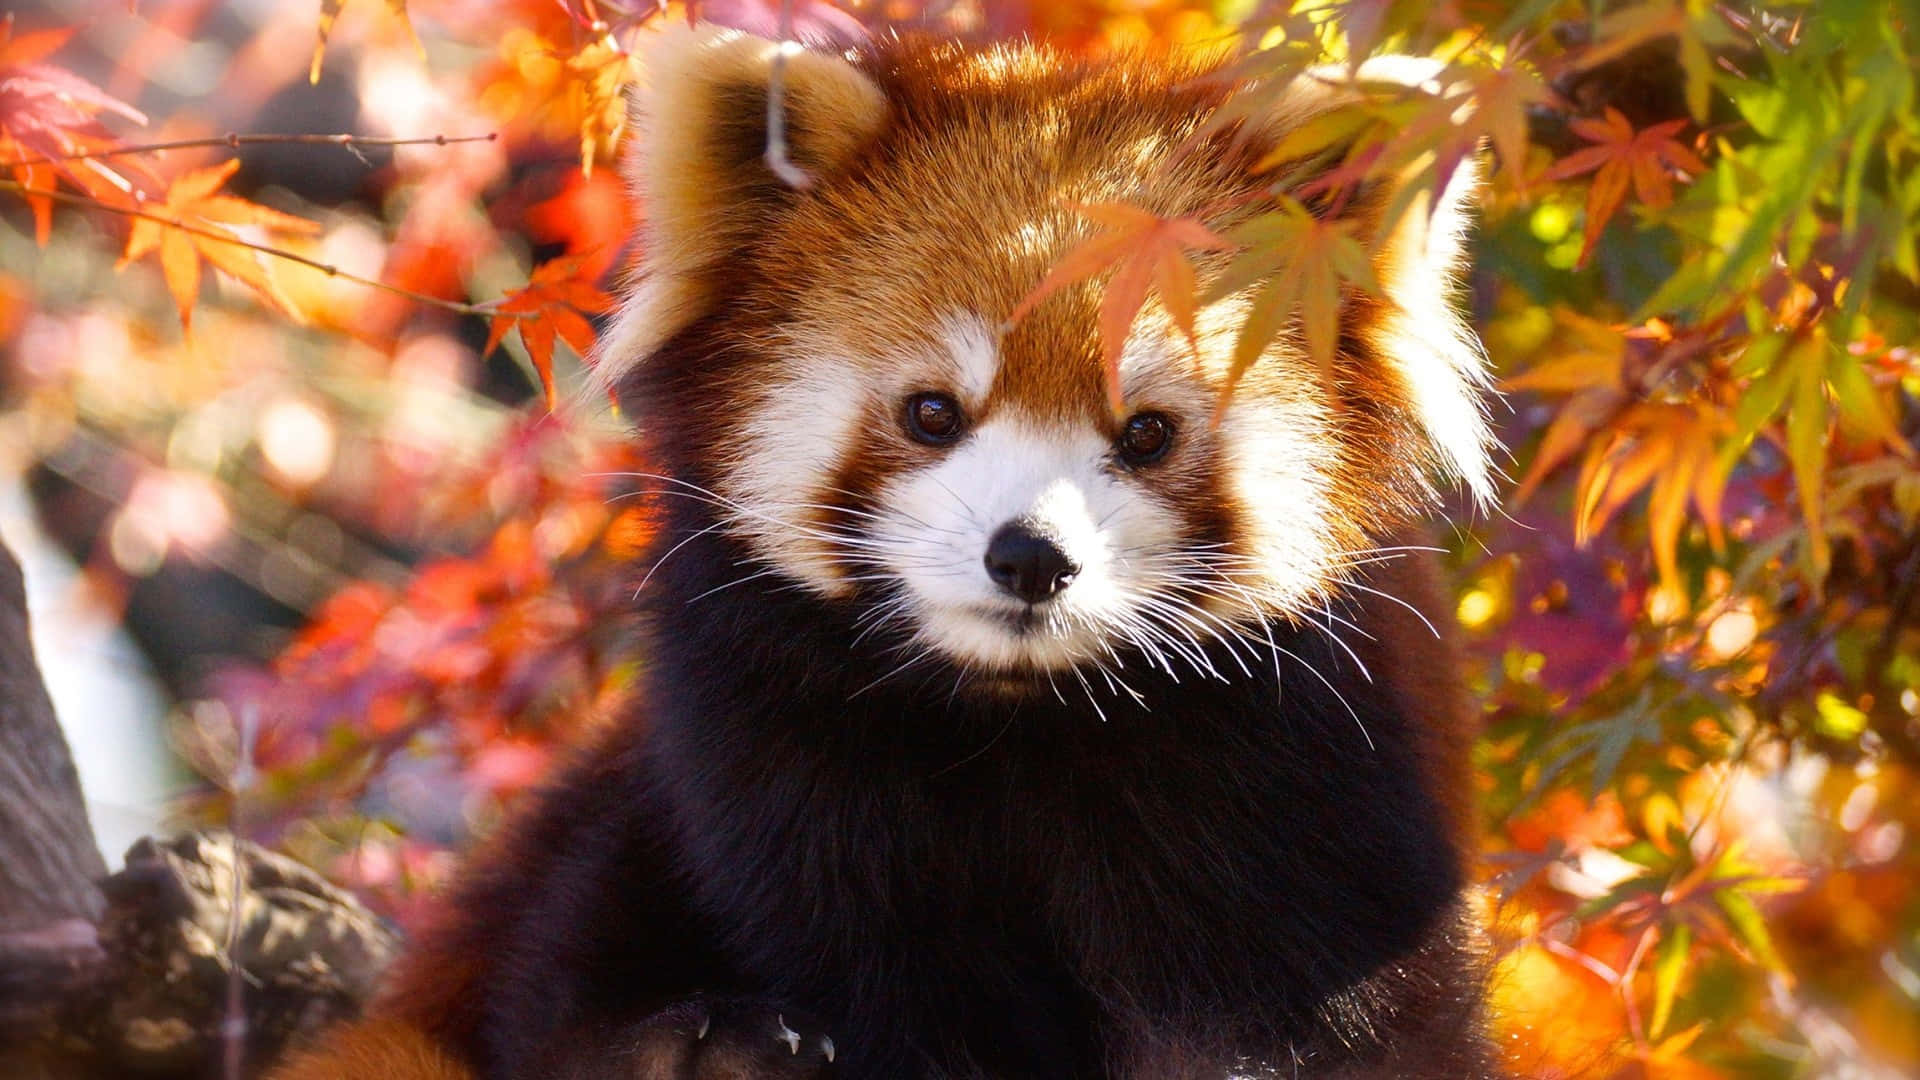 Adorable Red Panda In A Garden